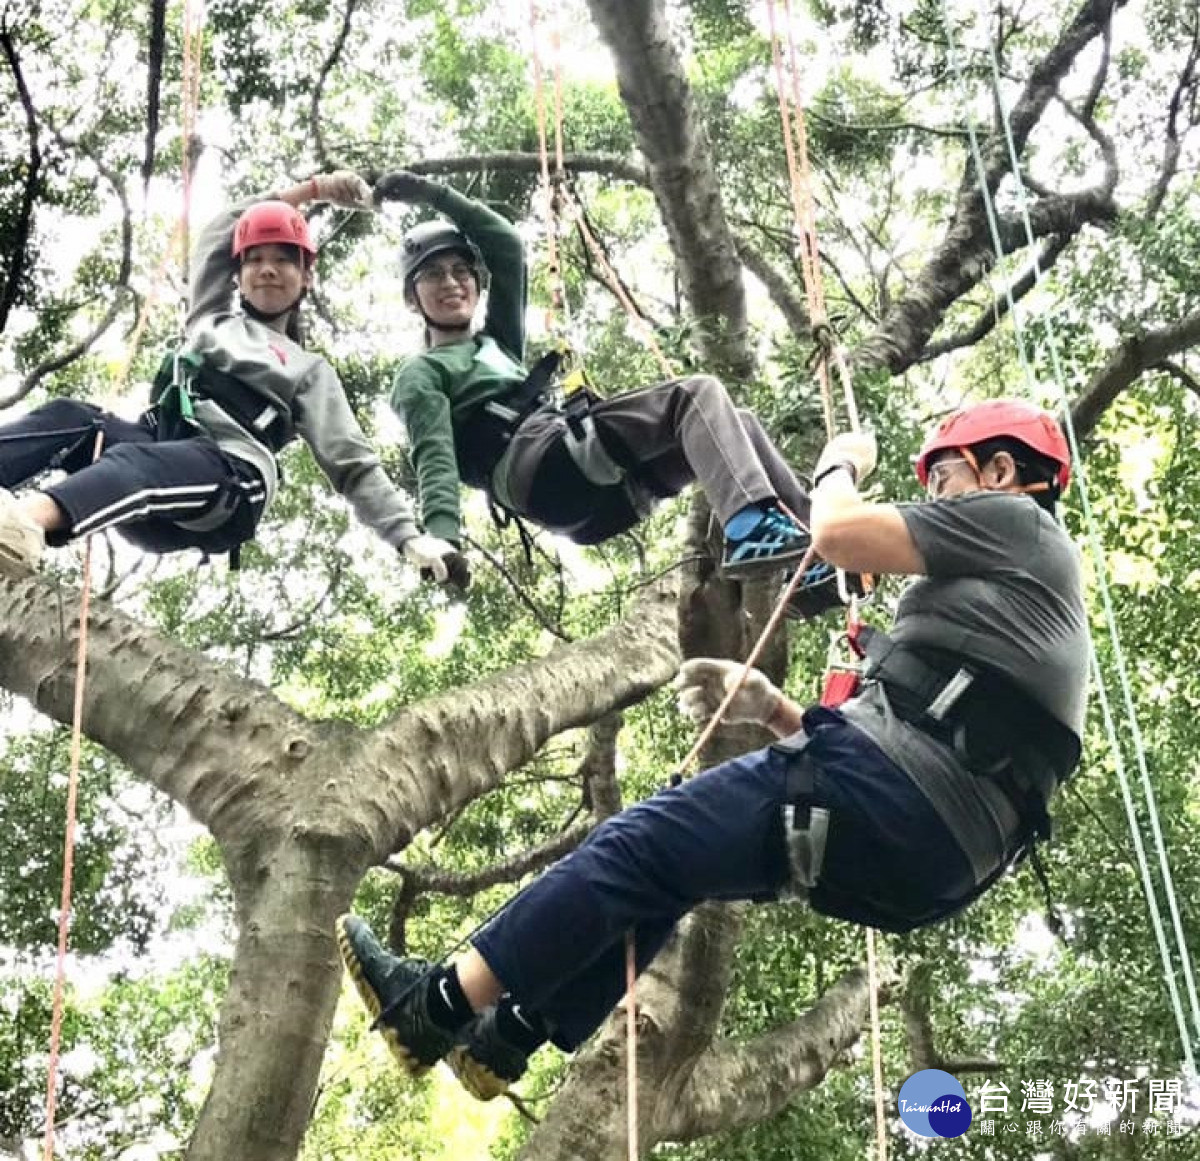 陽明交大體育教育舉辦攀樹活動鼓勵師生親近大自然